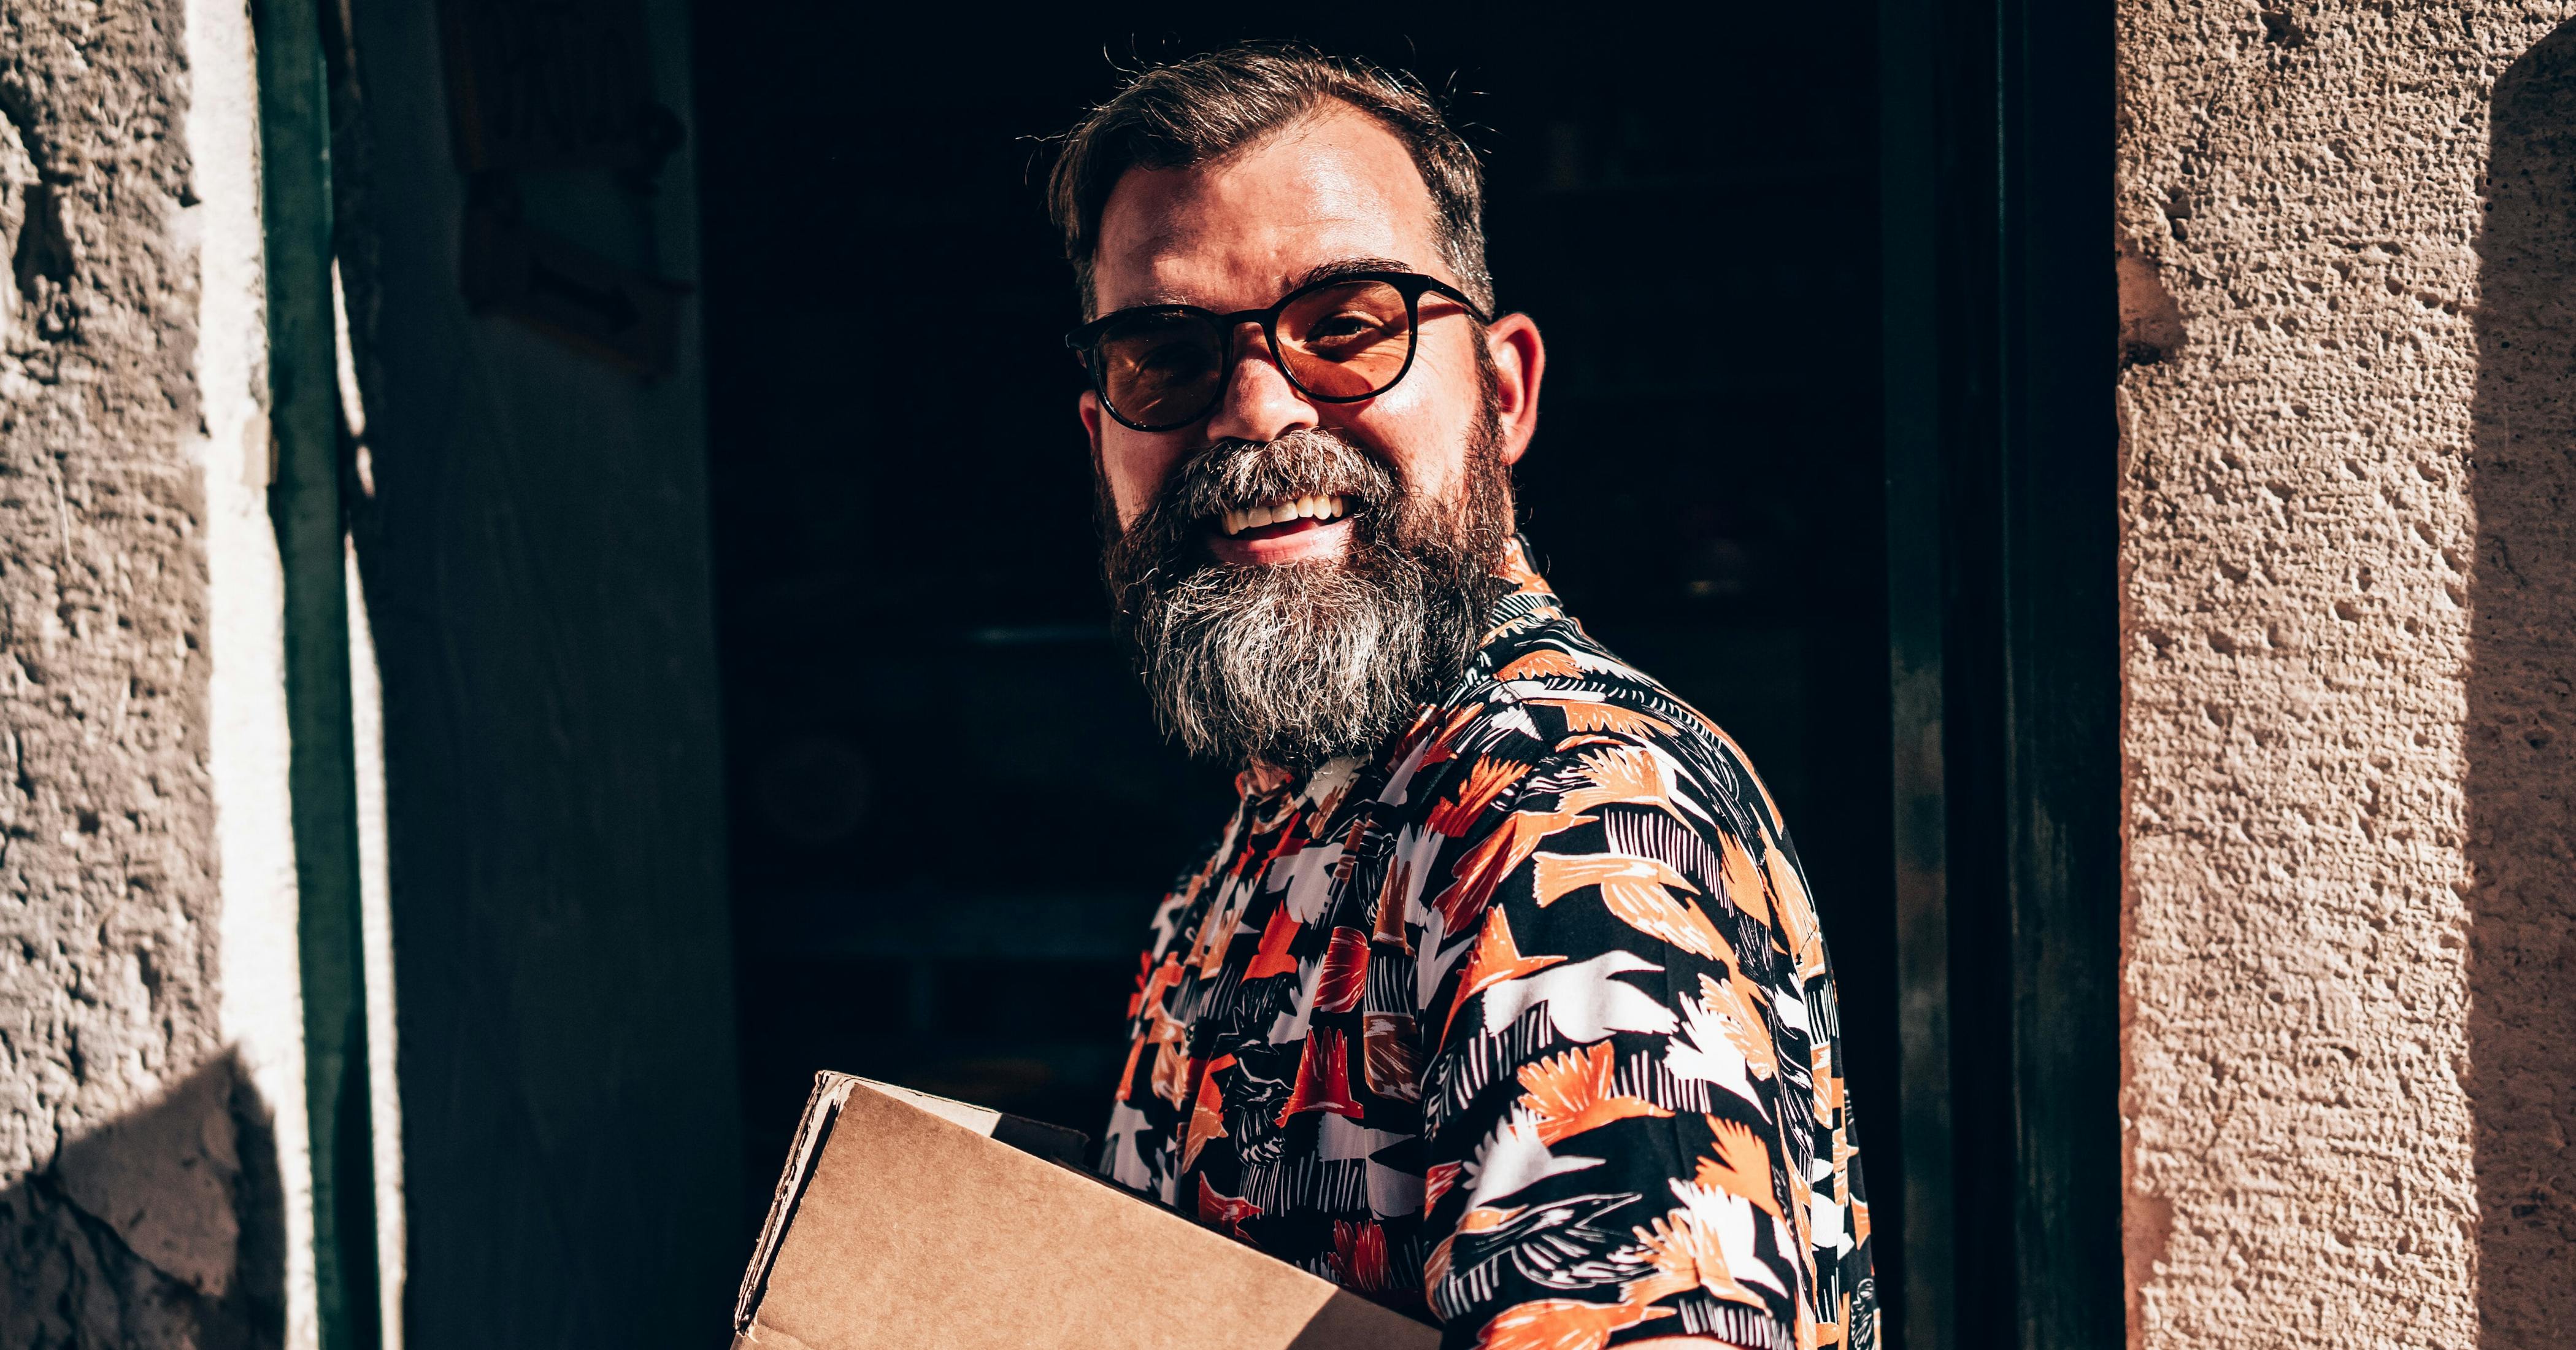 Homem sorridente de óculos escuros e camisa com estampa colorida com temática de natureza, segurando uma caixa de papelão e entrando na porta de um prédio na rua.